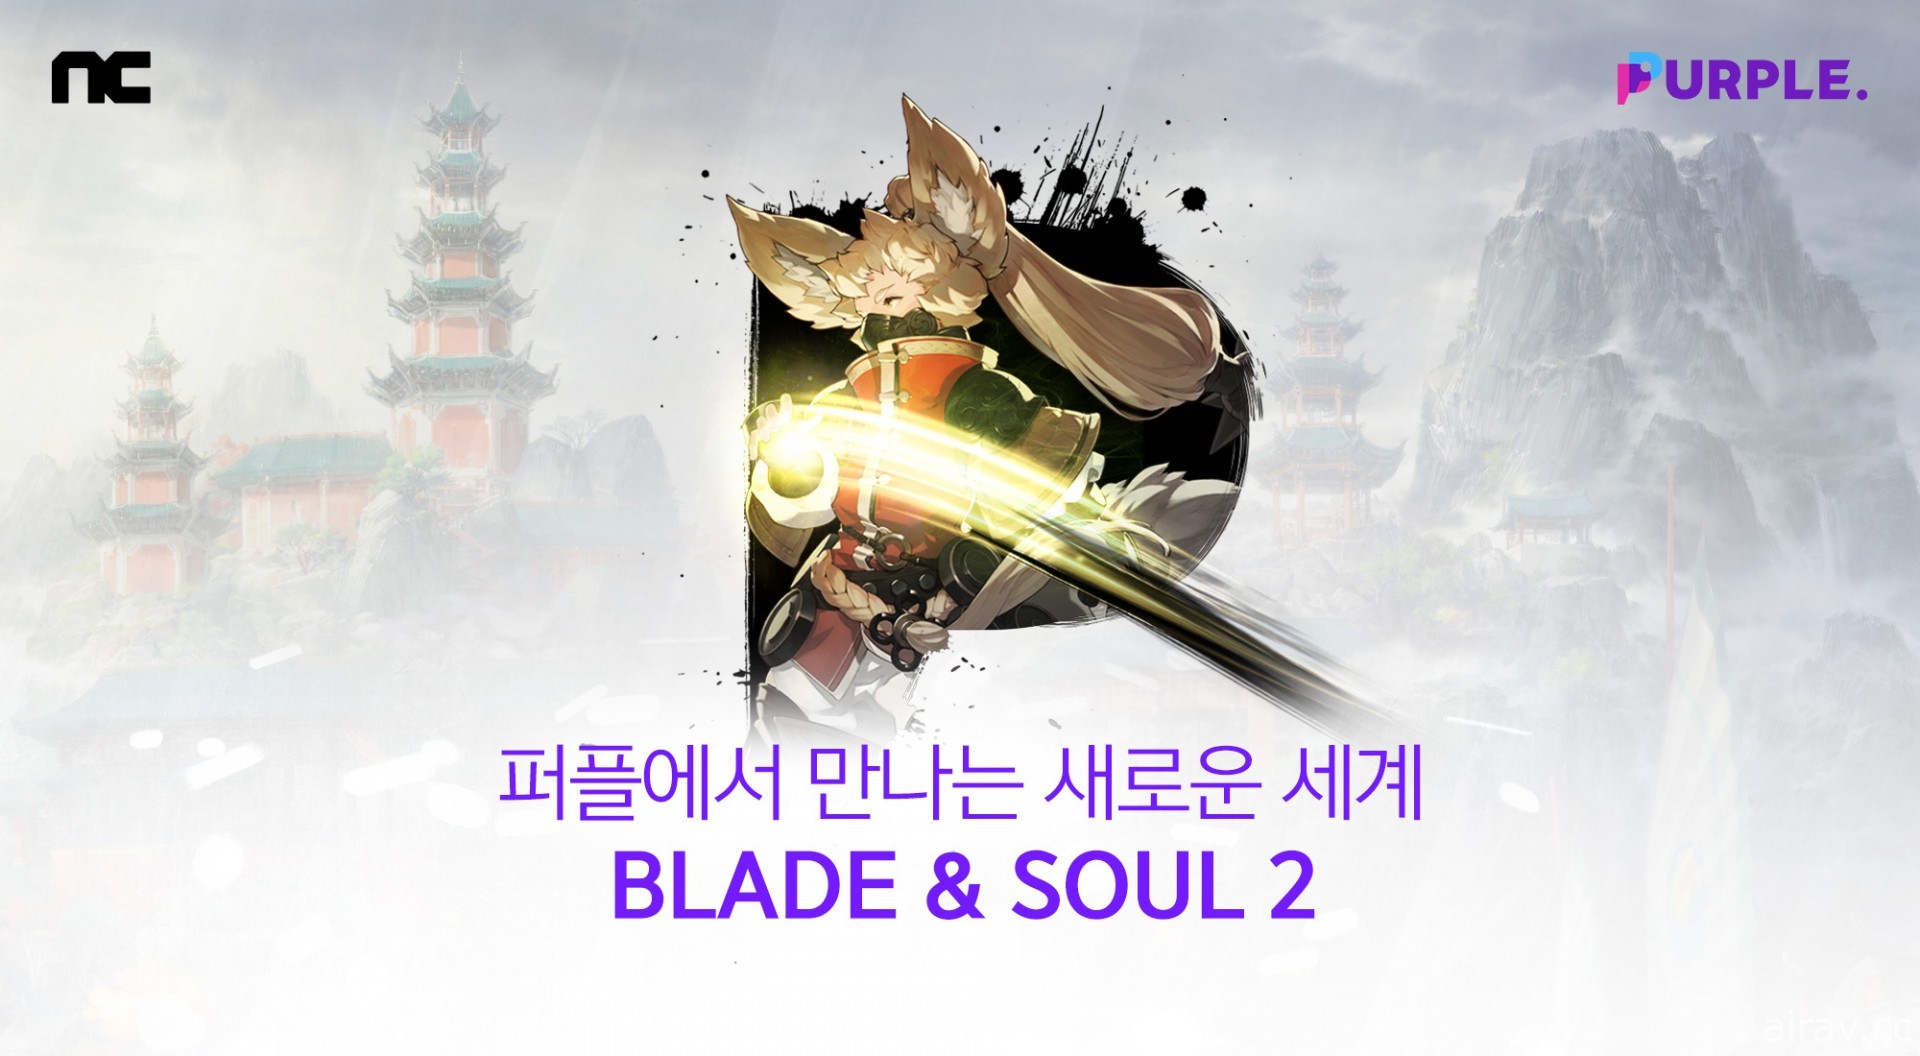 《剑灵 2》于韩国开放预先下载 共计 746 万预先注册数量打破《天堂 2 M》纪录